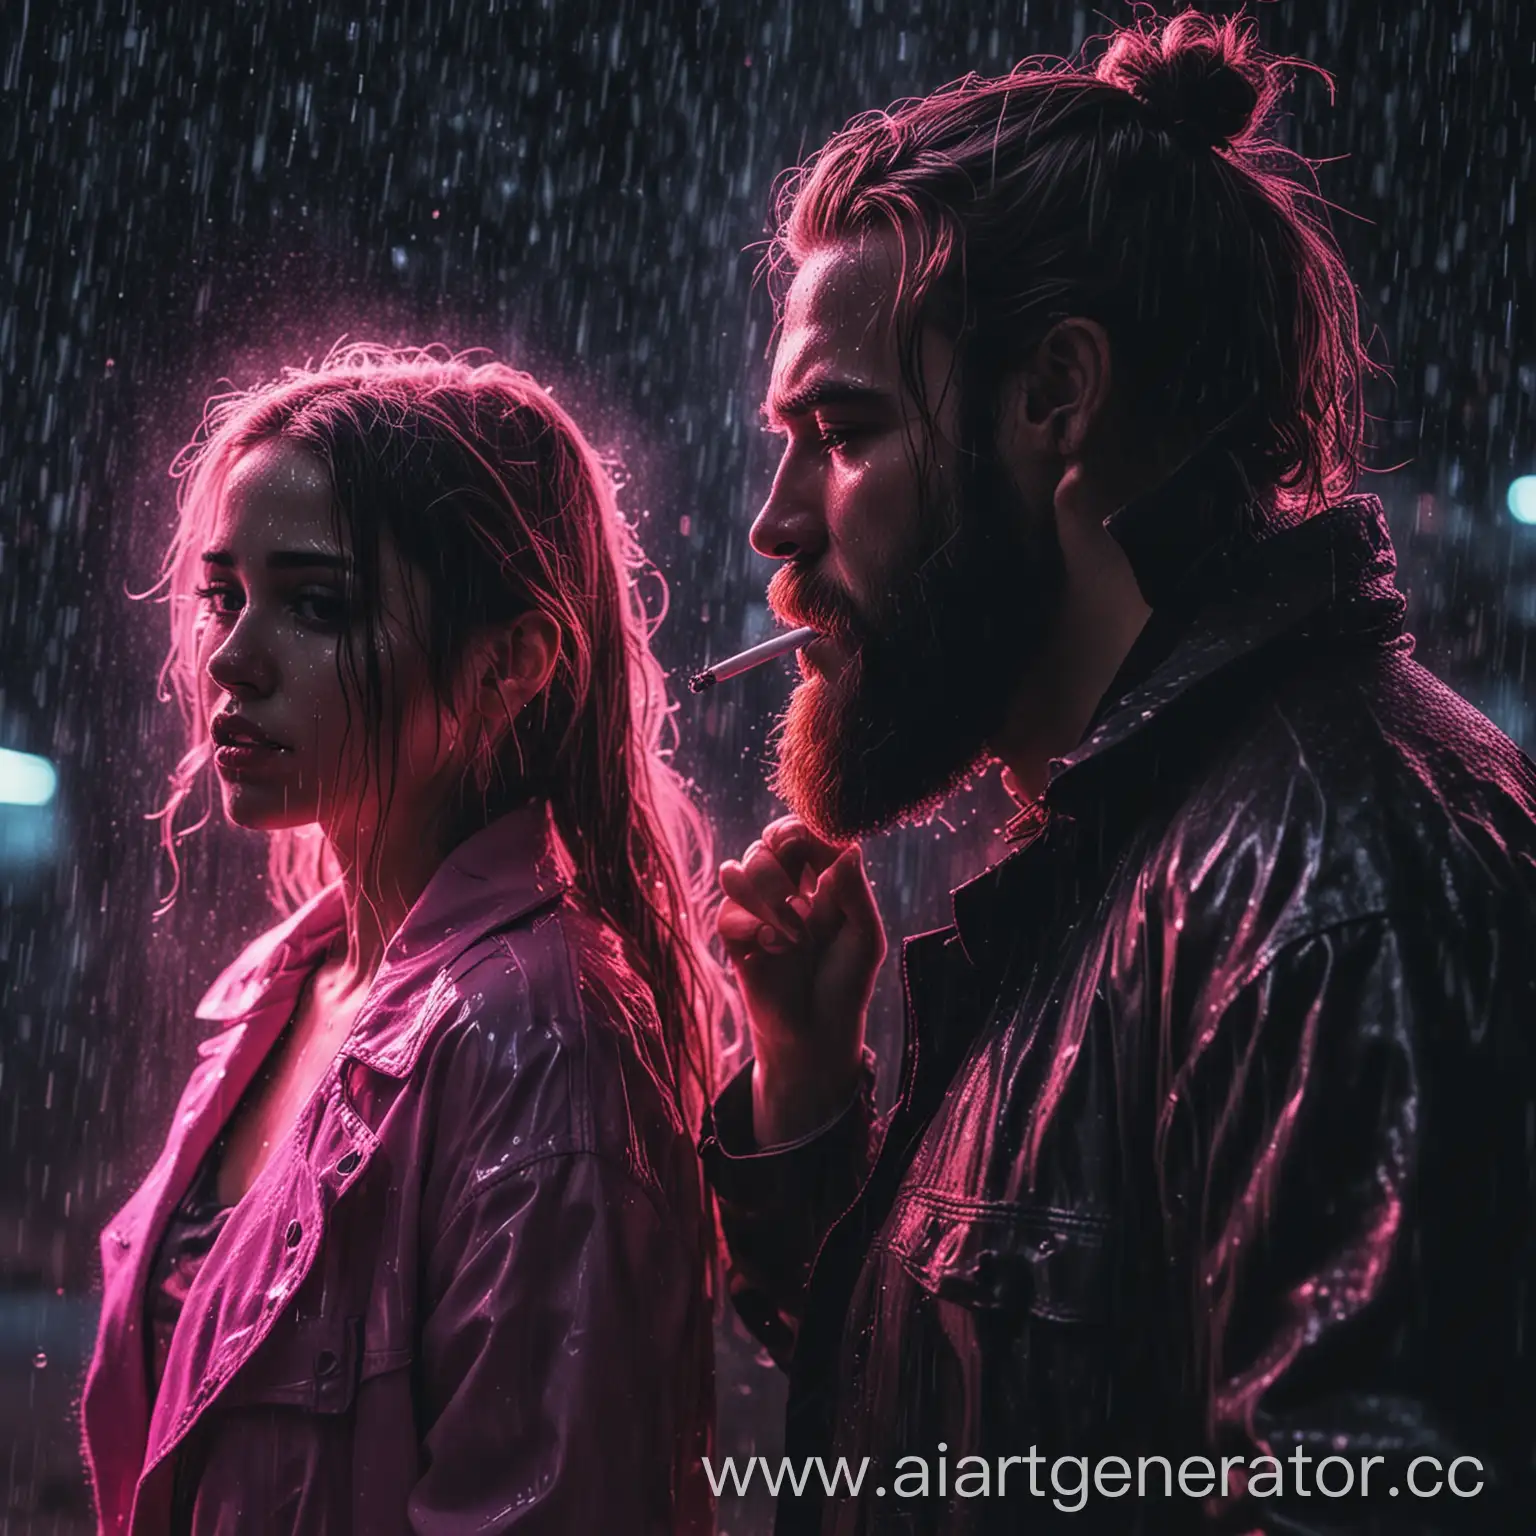 девушка и мужчина с бородой стоят спиной друг к другу, мужчина курит, девушка плачет, на фоне дождя, неоновый стиль
